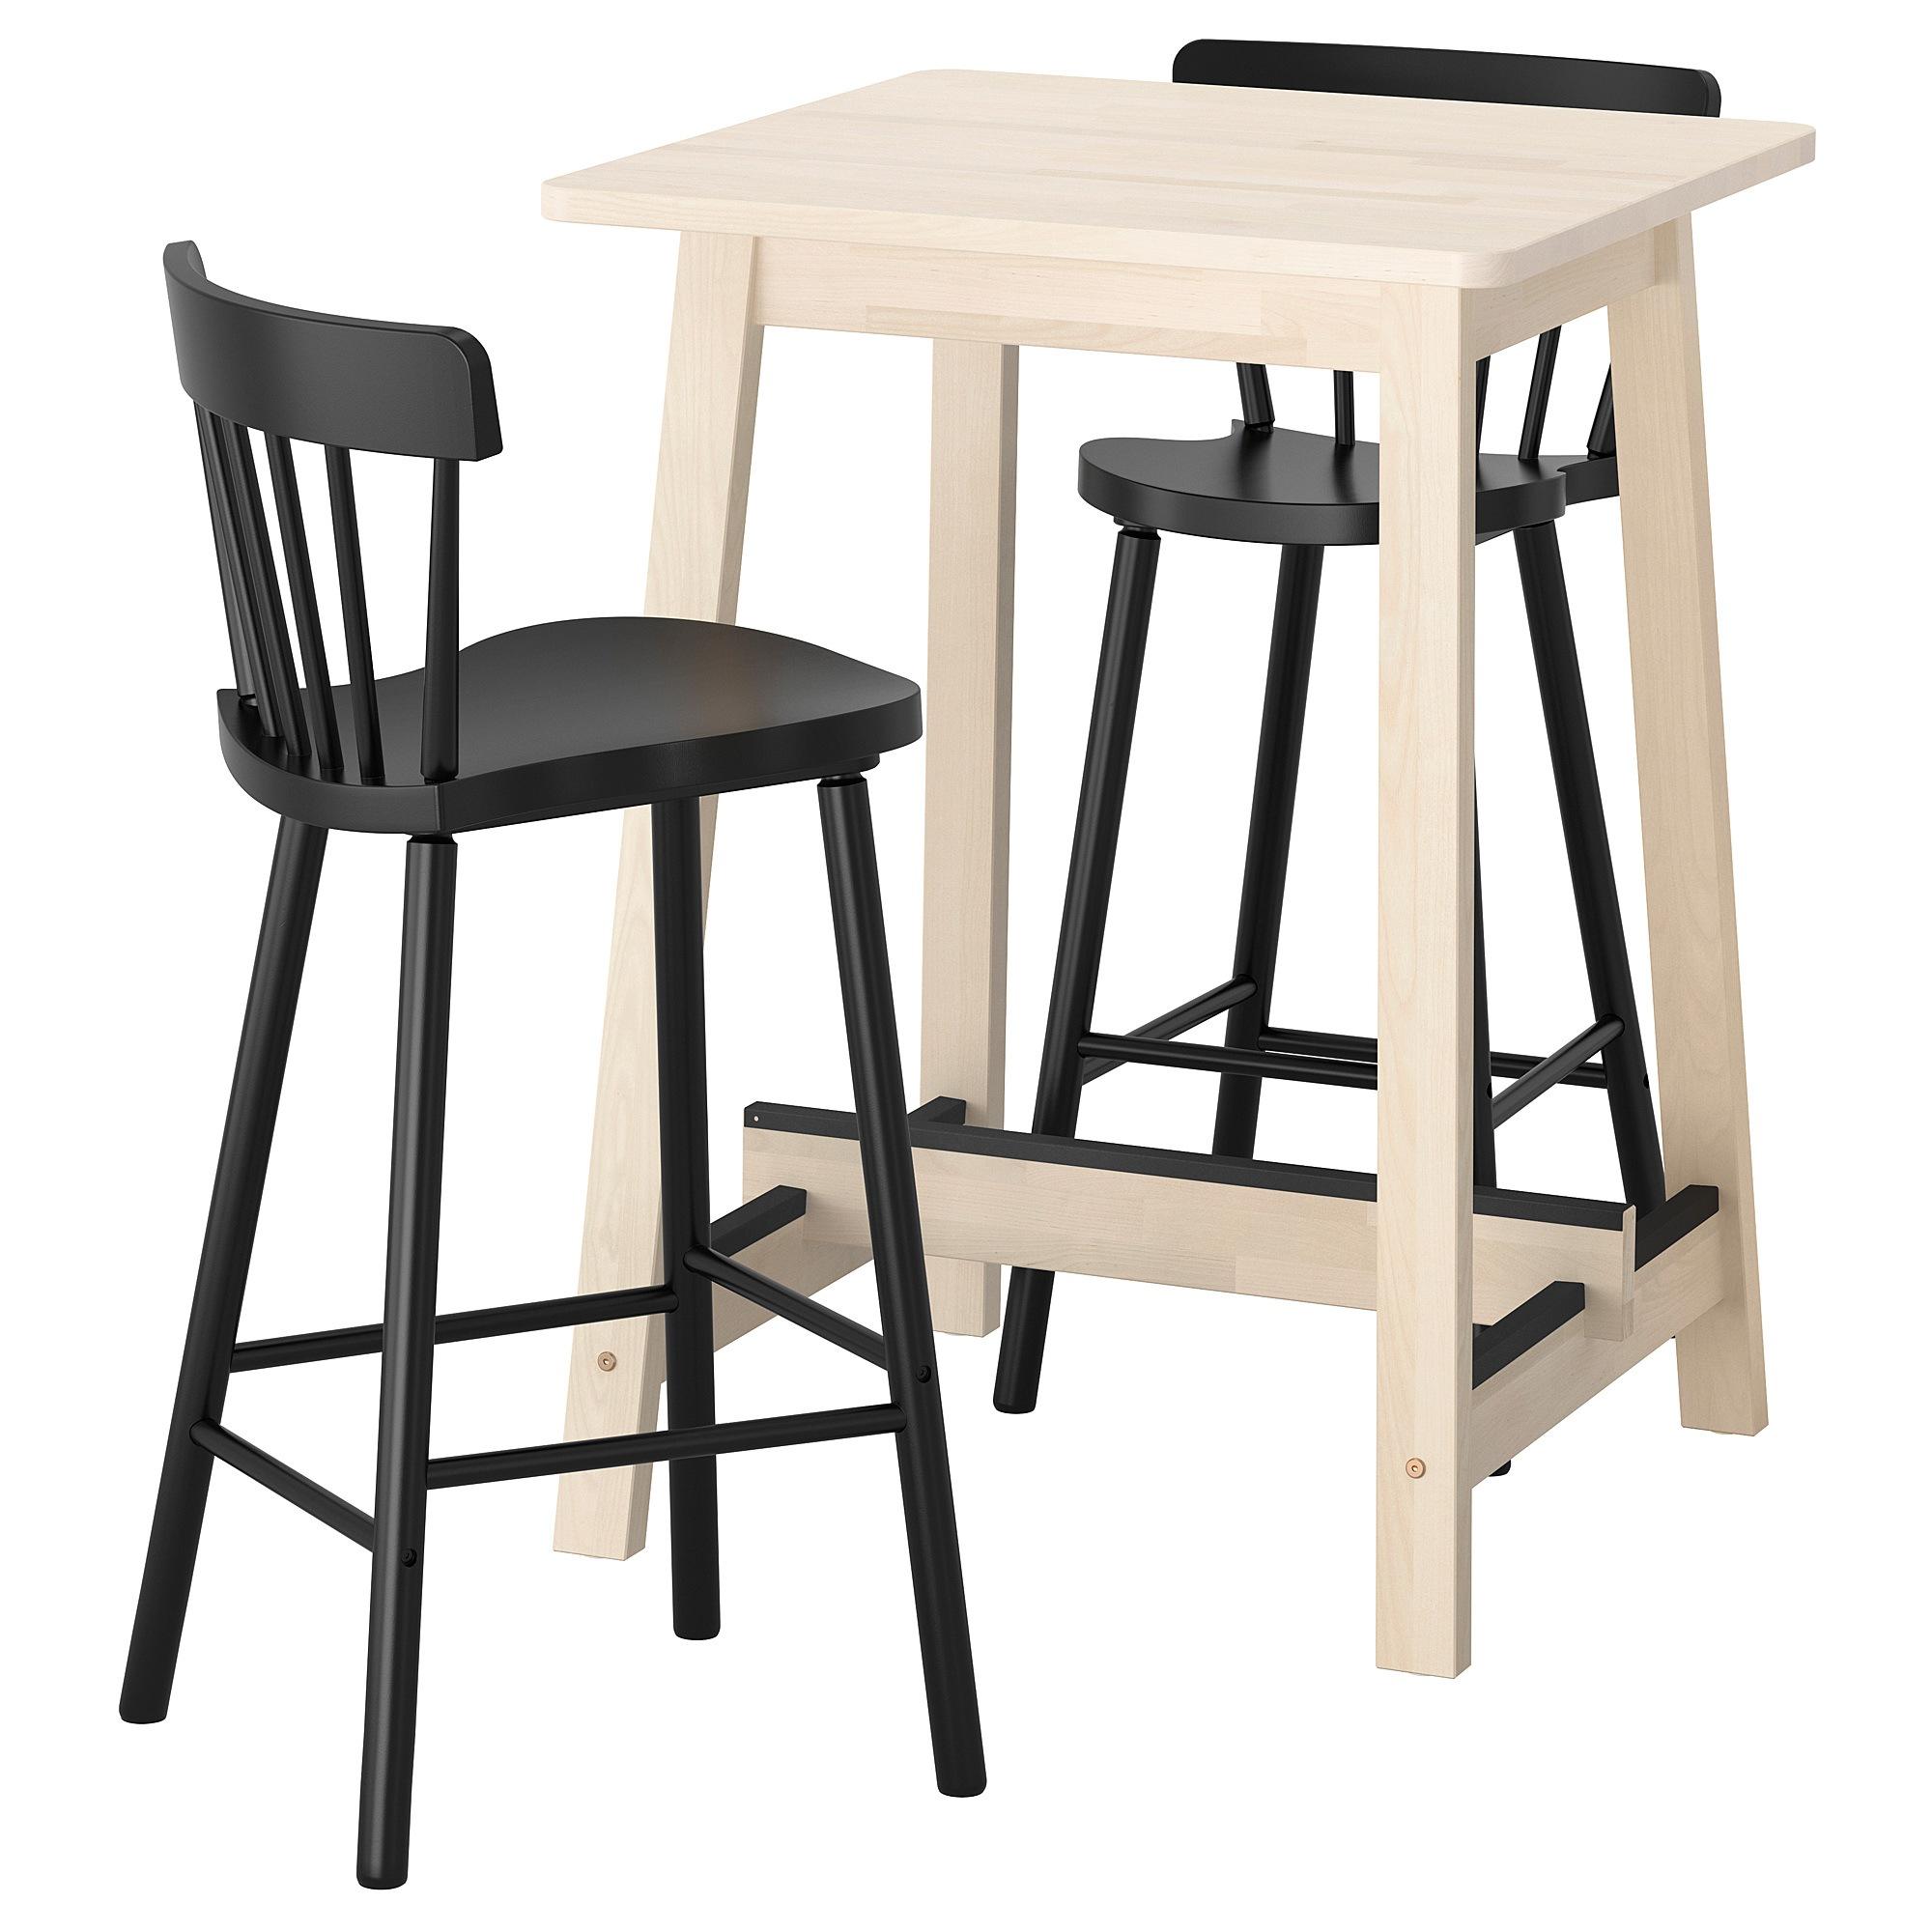 [ด่วน!! โปรโมชั่นมีจำนวนจำกัด] โต๊ะบาร์และบาร์เก้าอี้วางเท้า เก้าอี้วางขา เก้าอี้ตูล สตูล 2 ตัว โต๊ะคาเฟ่ NORRÅKER / NORRÅKER